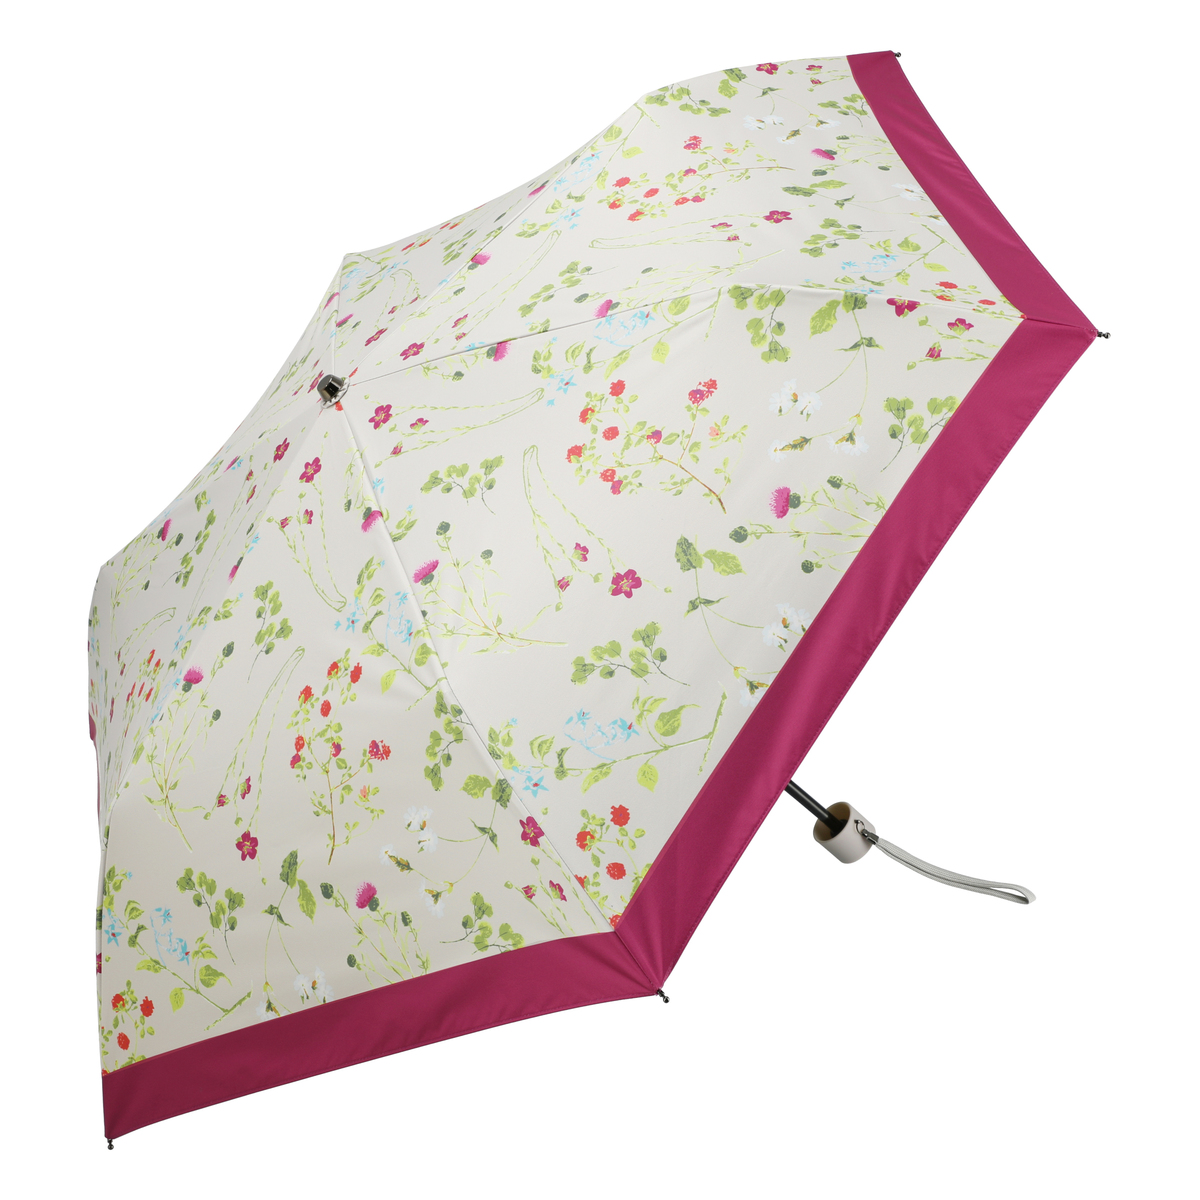  ルナジュメール UV+1級遮光+晴雨兼用ボタニカル柄折傘  ピンク